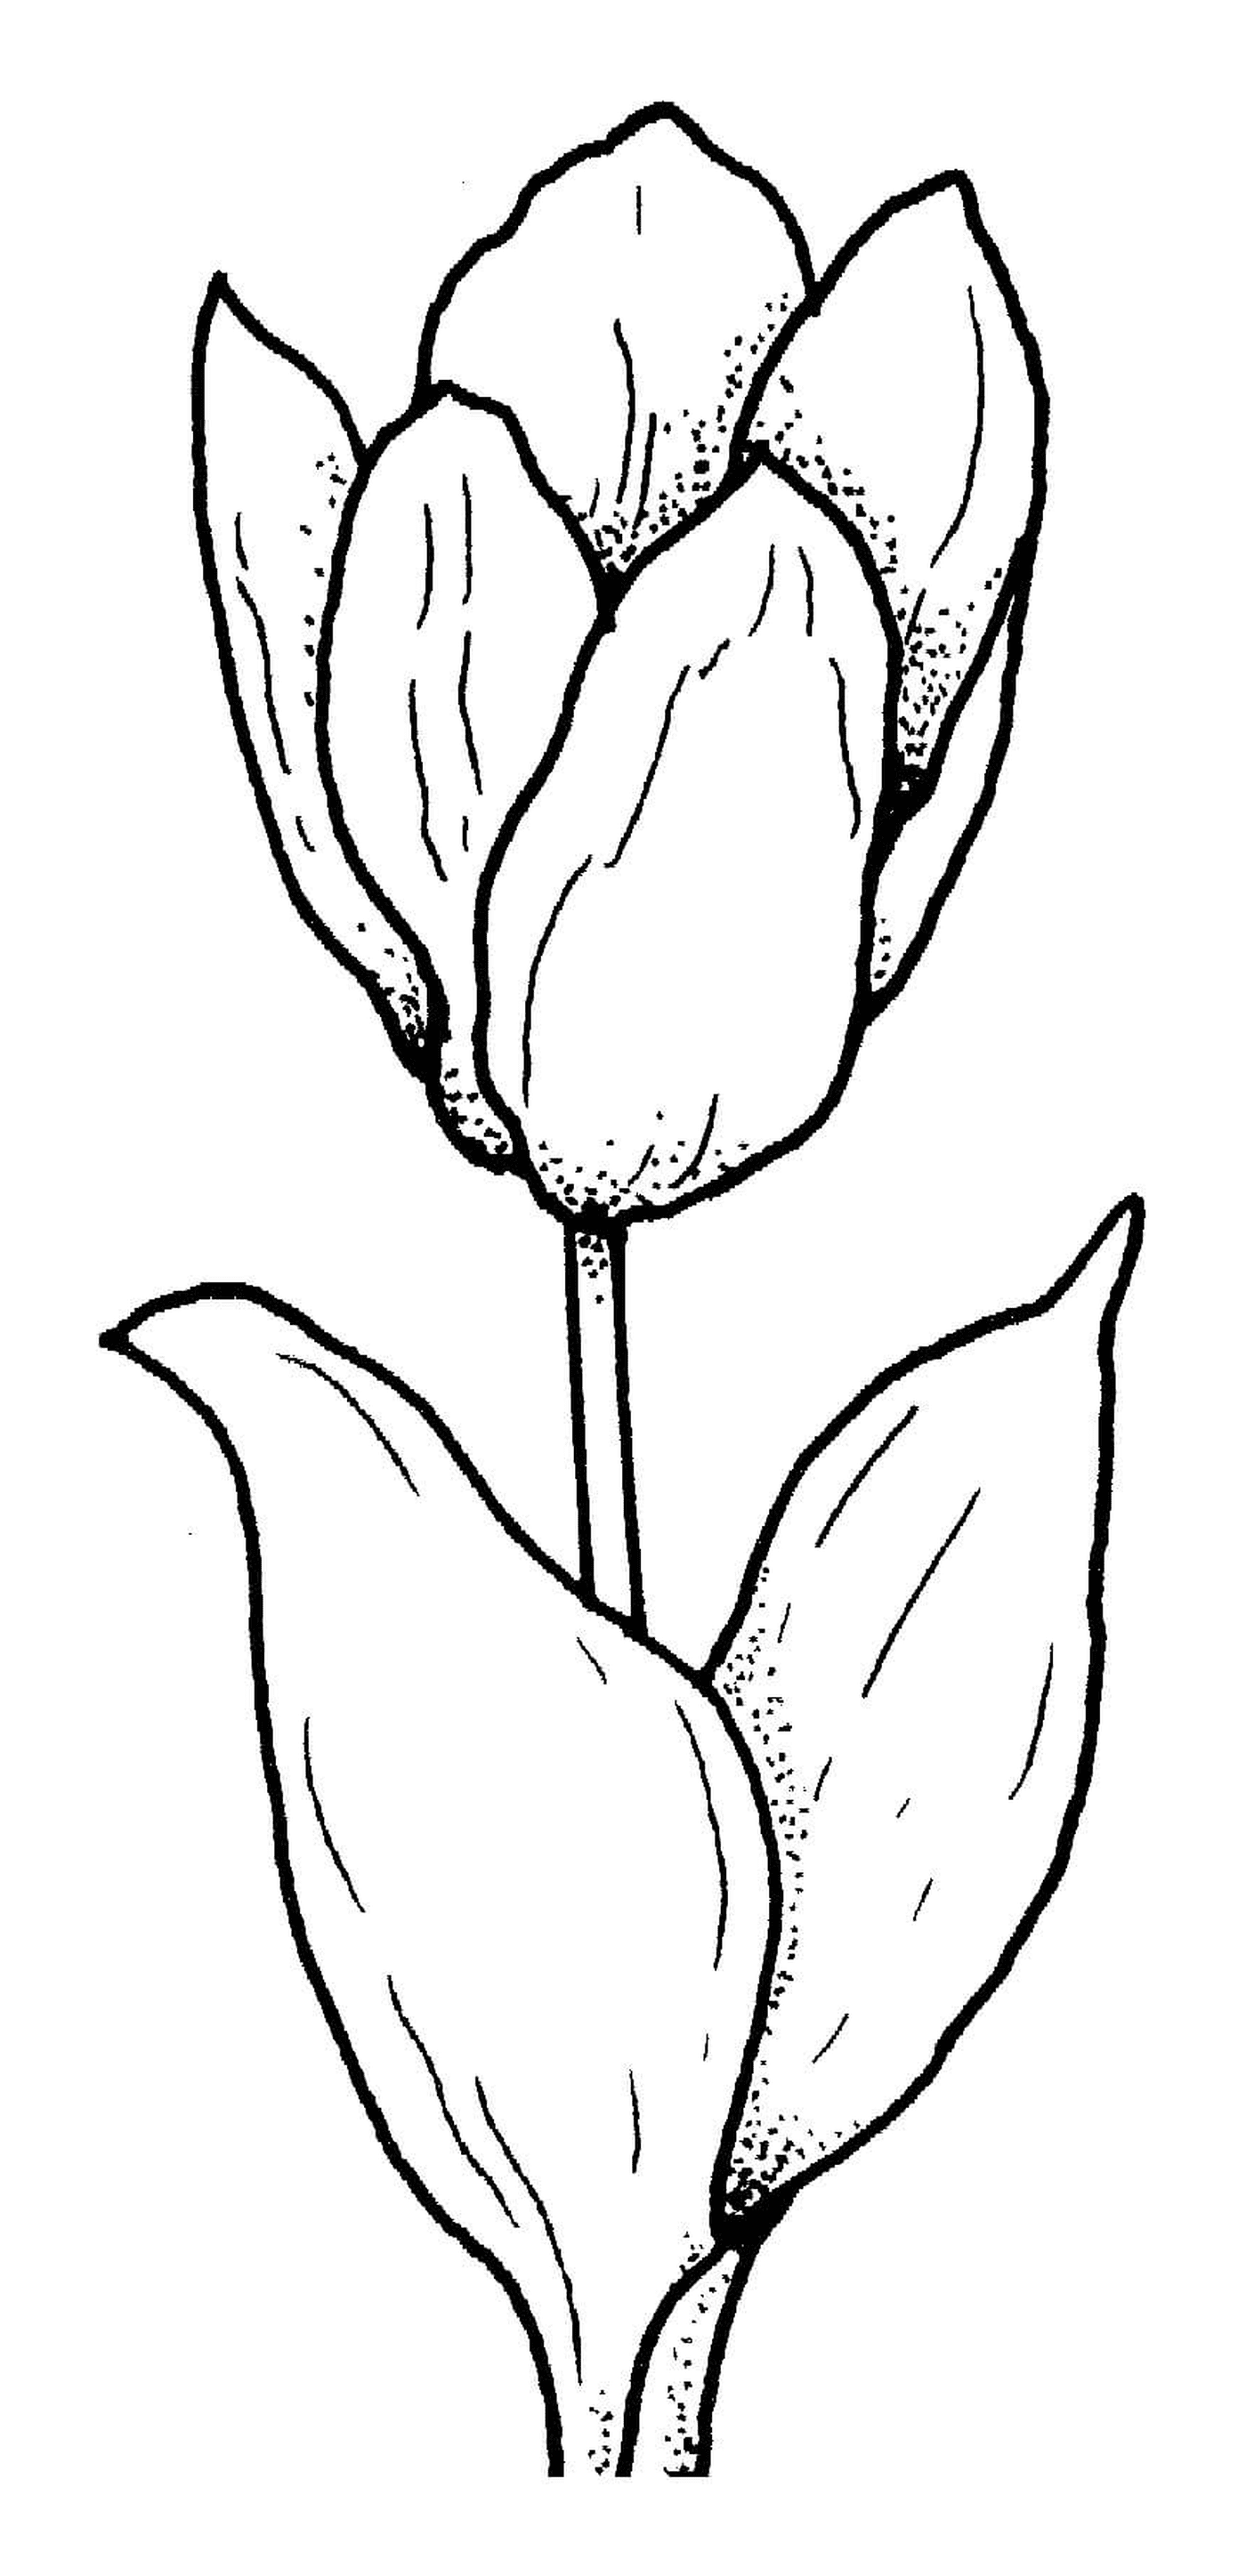  Fiori originali di tulipani 